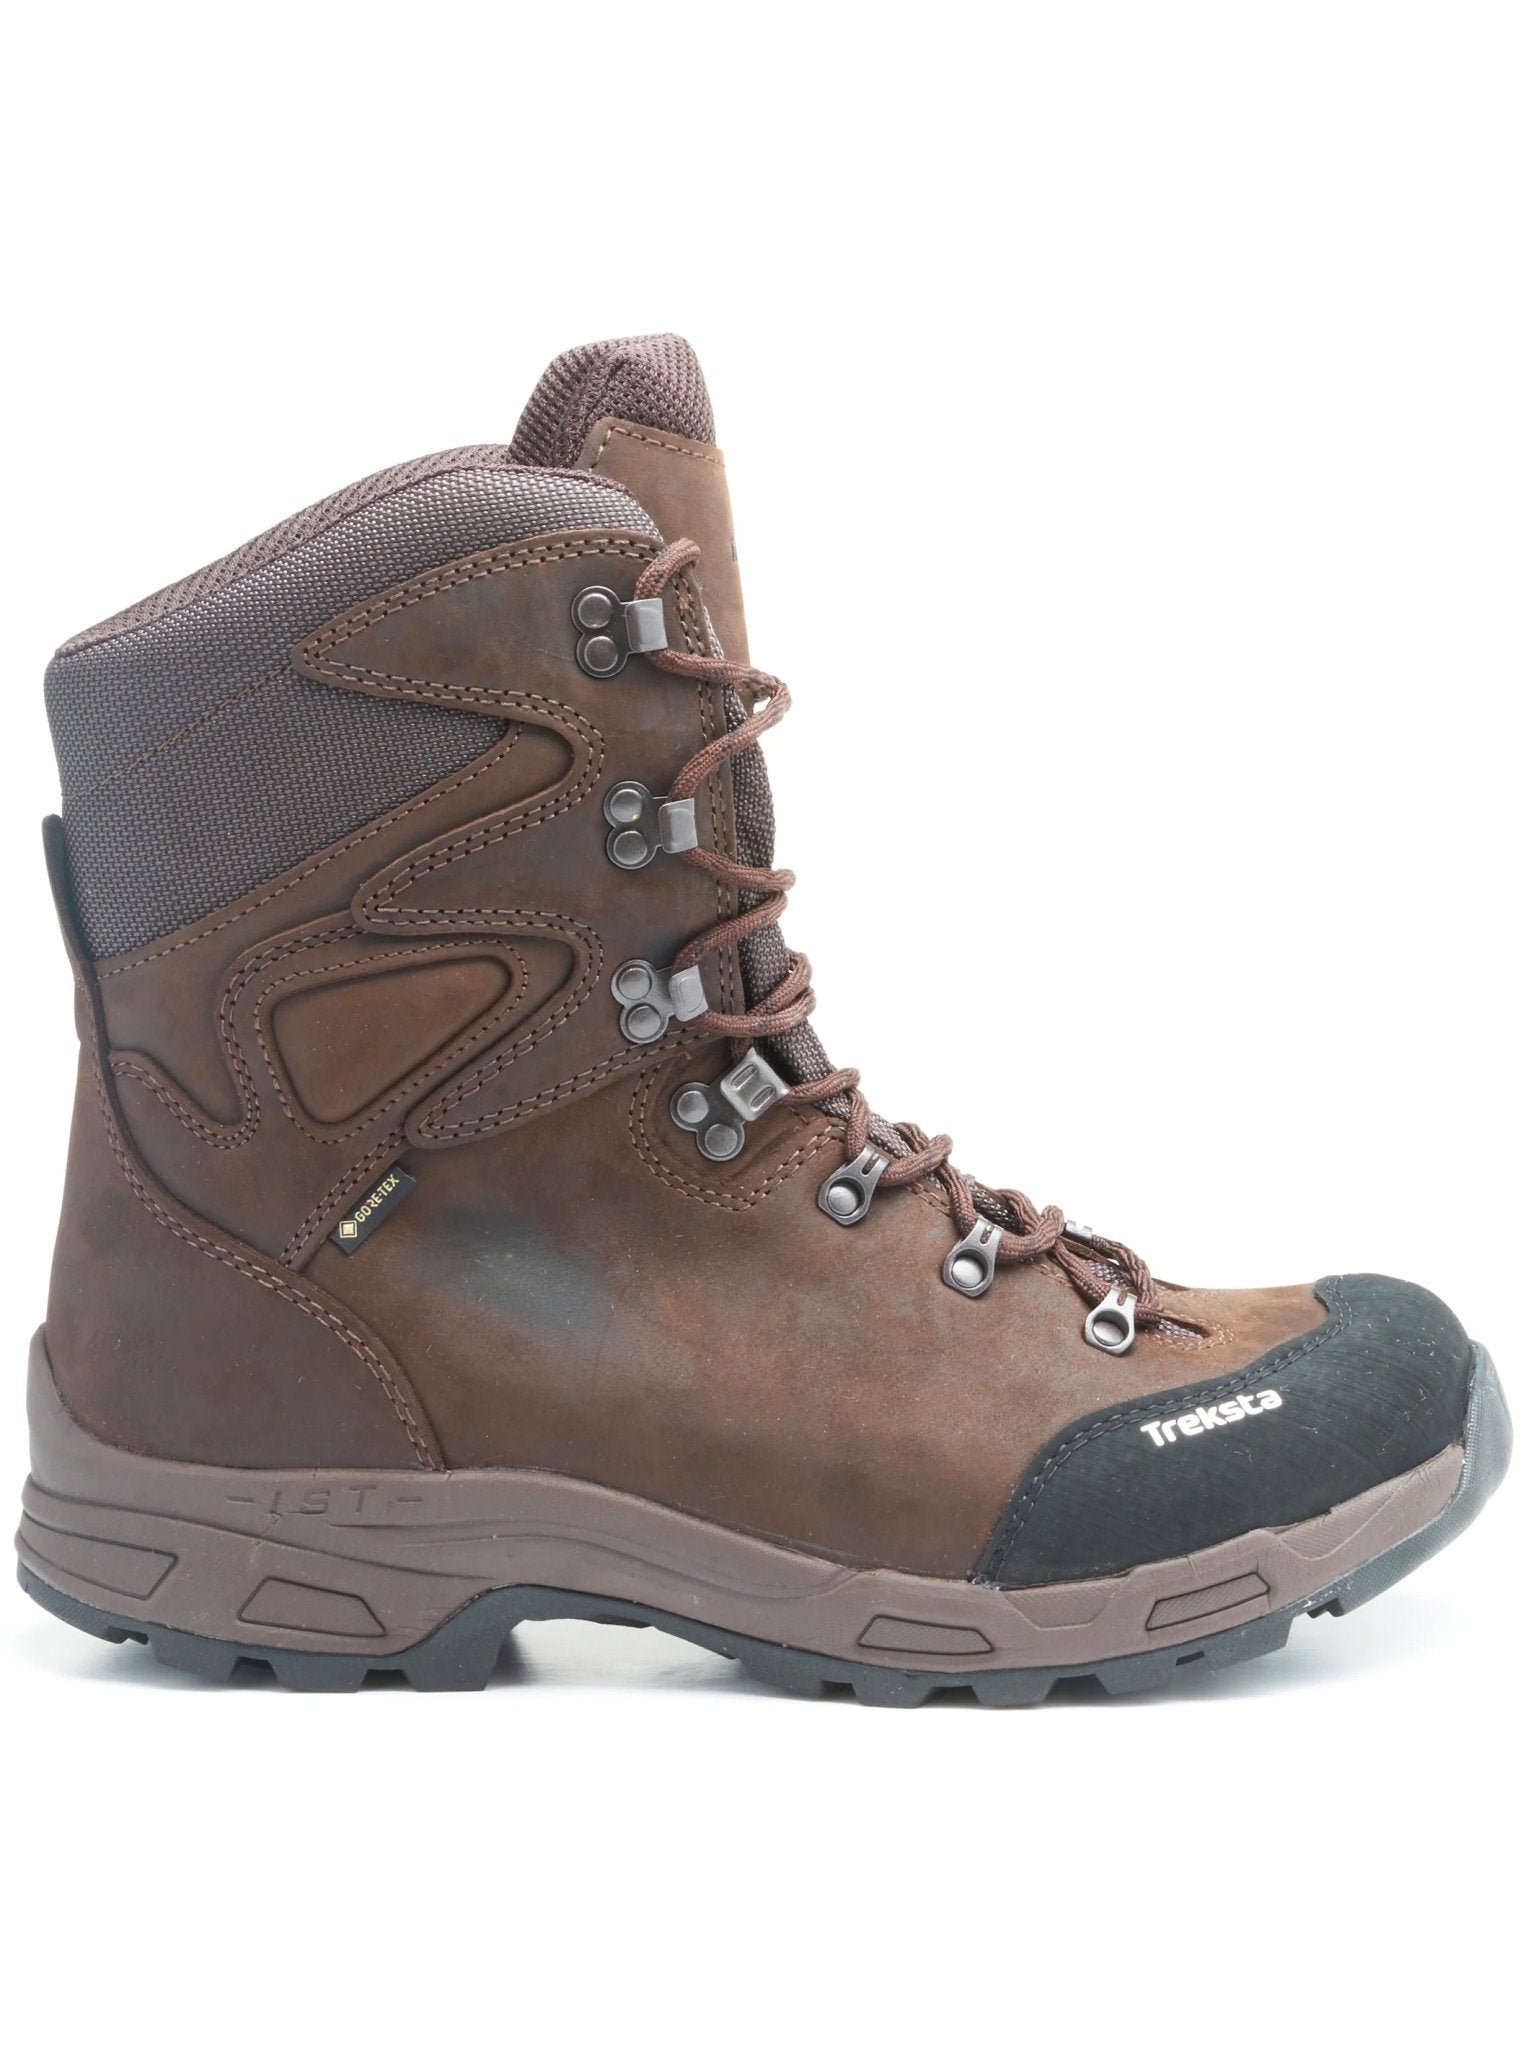 Treksta Treksta - Heathfield 8" Boots Gore - Tex Waterproof Lace up boot, with Nestfit and Icelock Boots